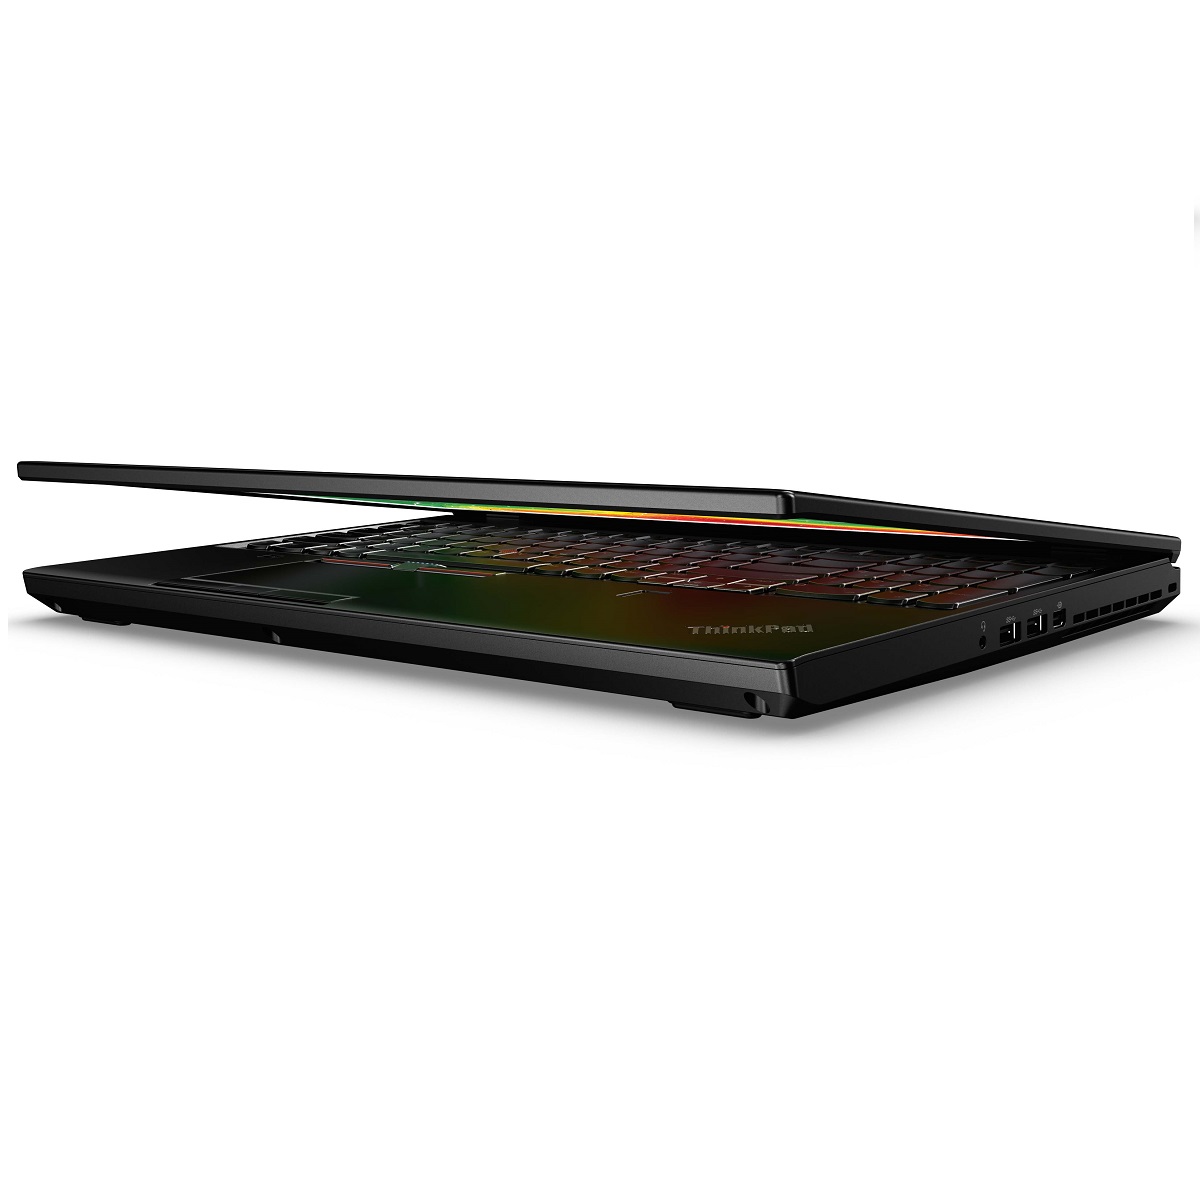  Lenovo ThinkPad P51 (20HH0014RT)